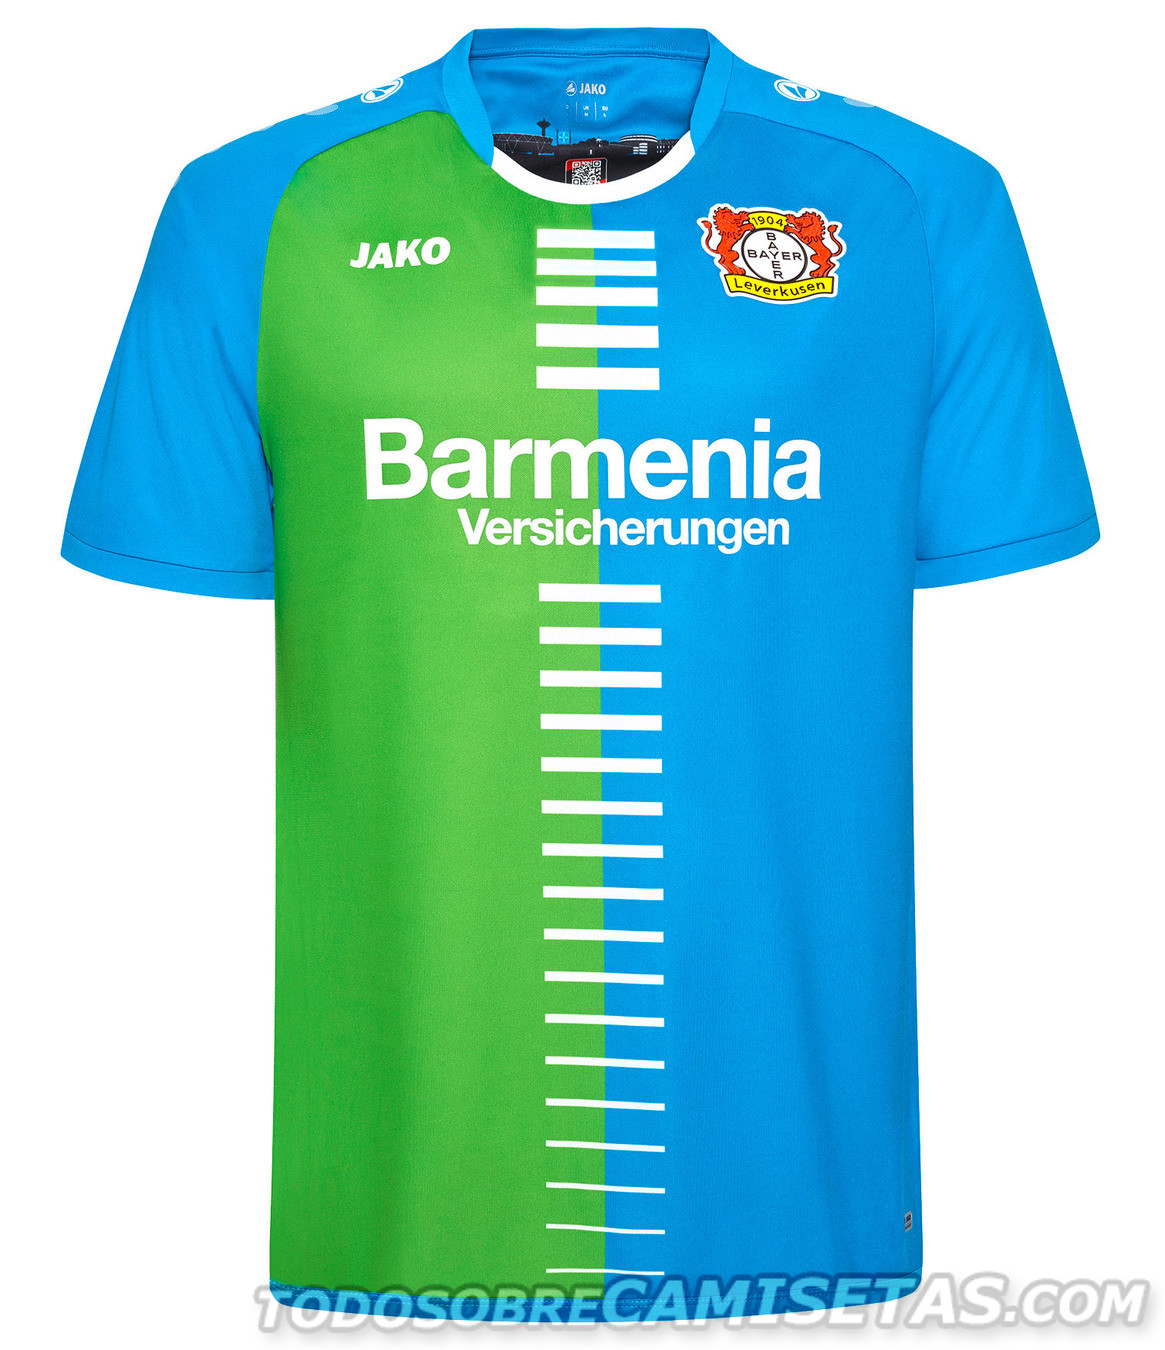 Leverkusen "Bayer" Jako Special Kit 2016